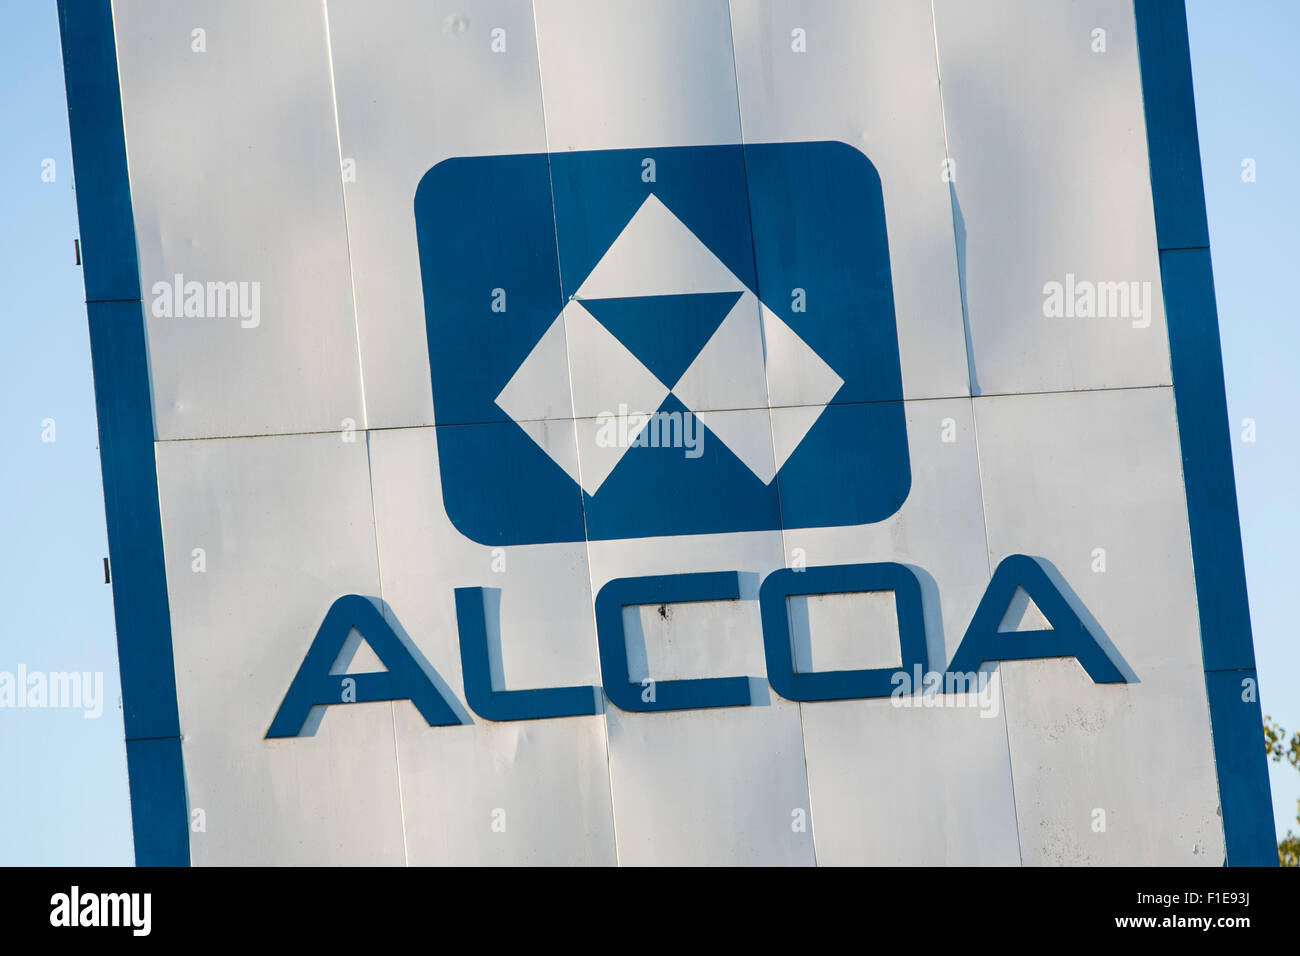 Ein Logo Zeichen außerhalb der Alcoa Warrick Operations Facility in Newburgh, Indiana am 25. August 2015. Stockfoto